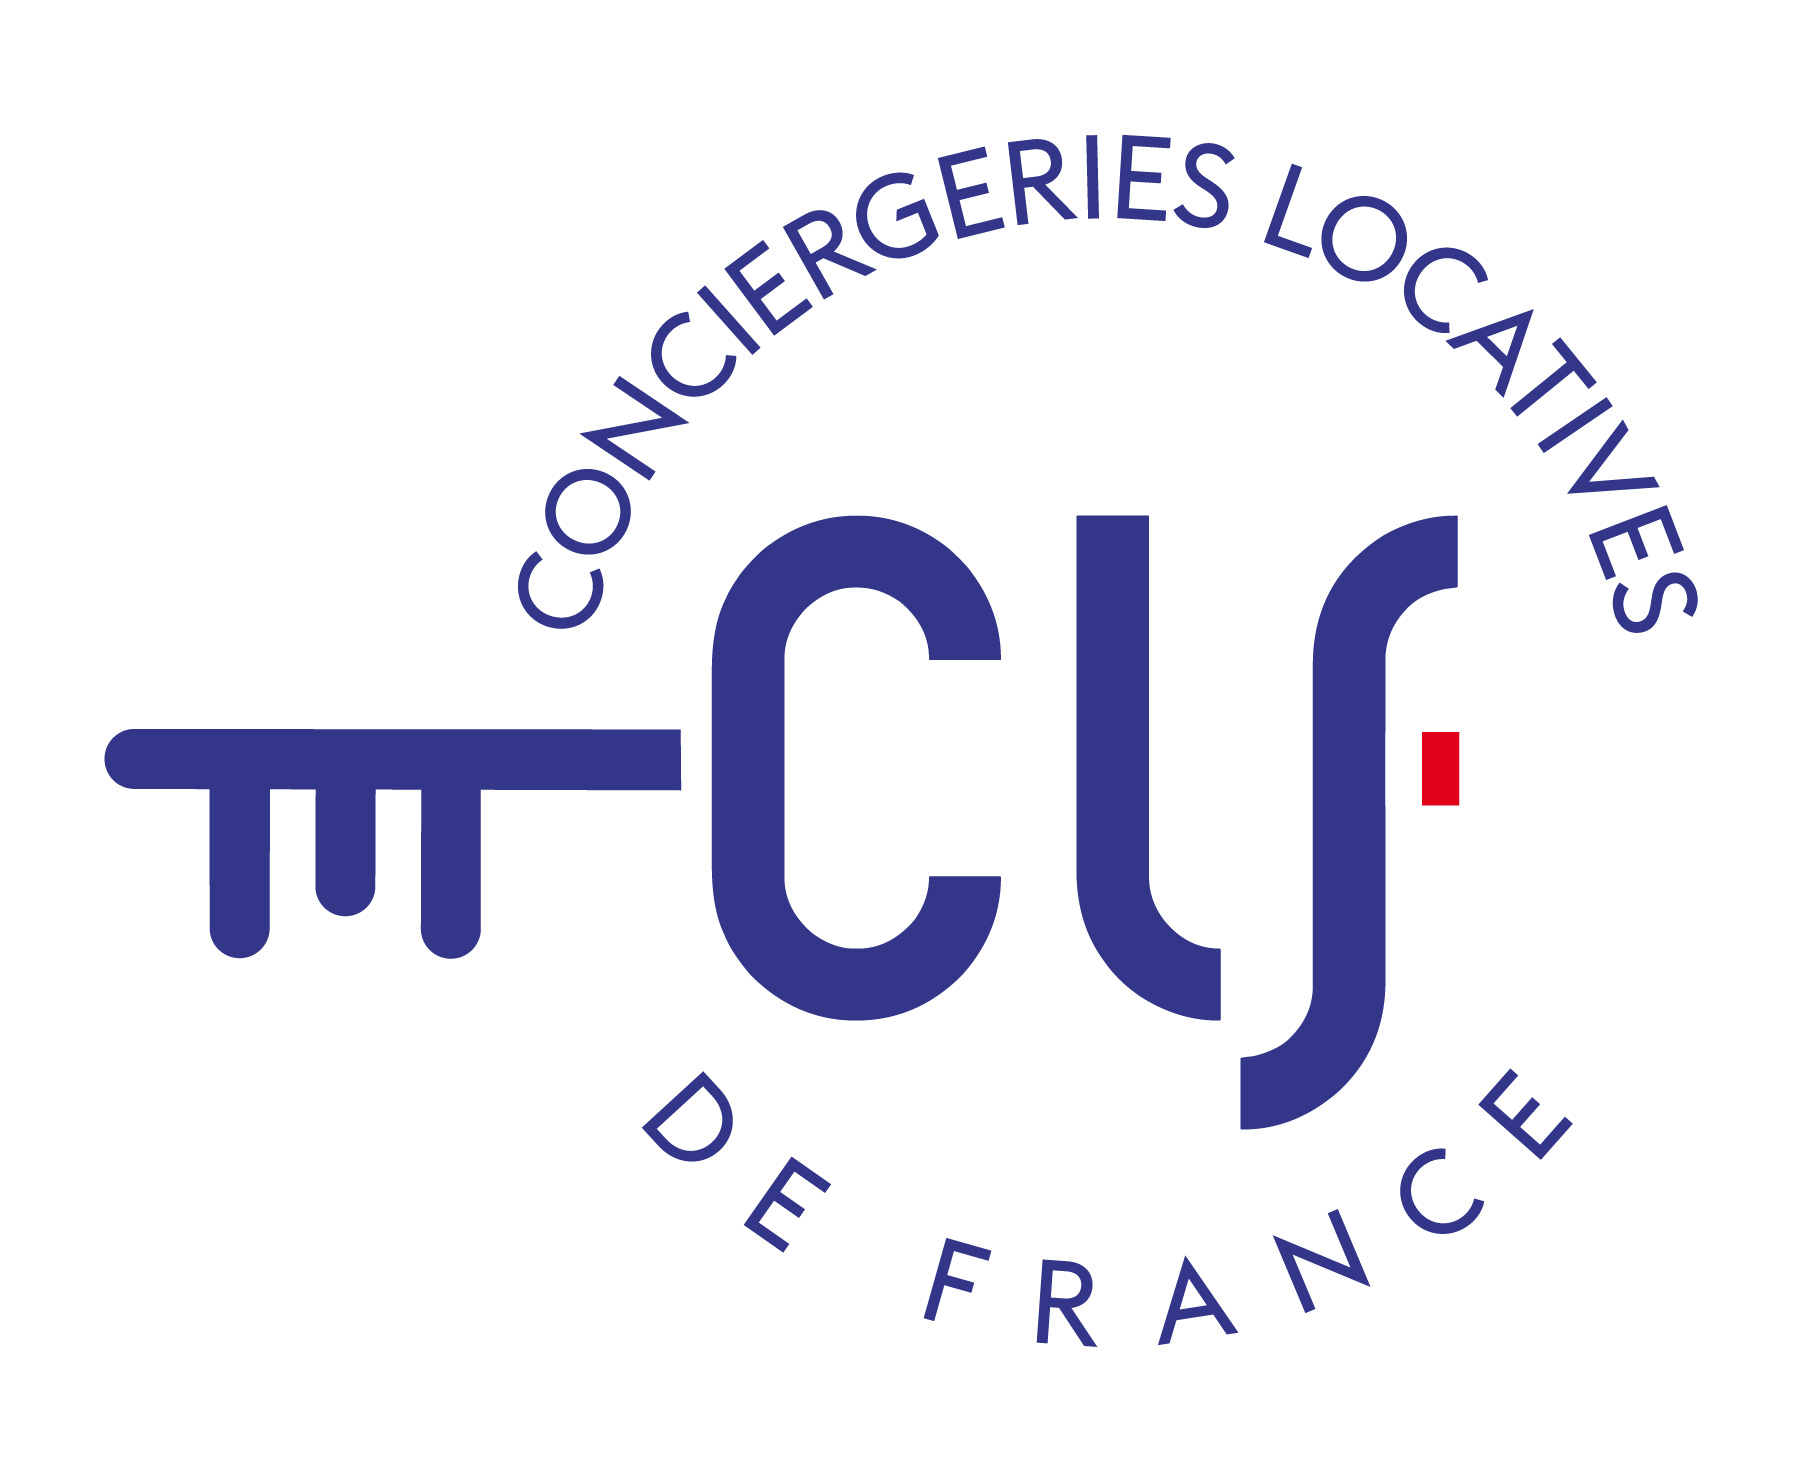 La conciergerie fait partie du réseau des Conciergeries Locatives de France